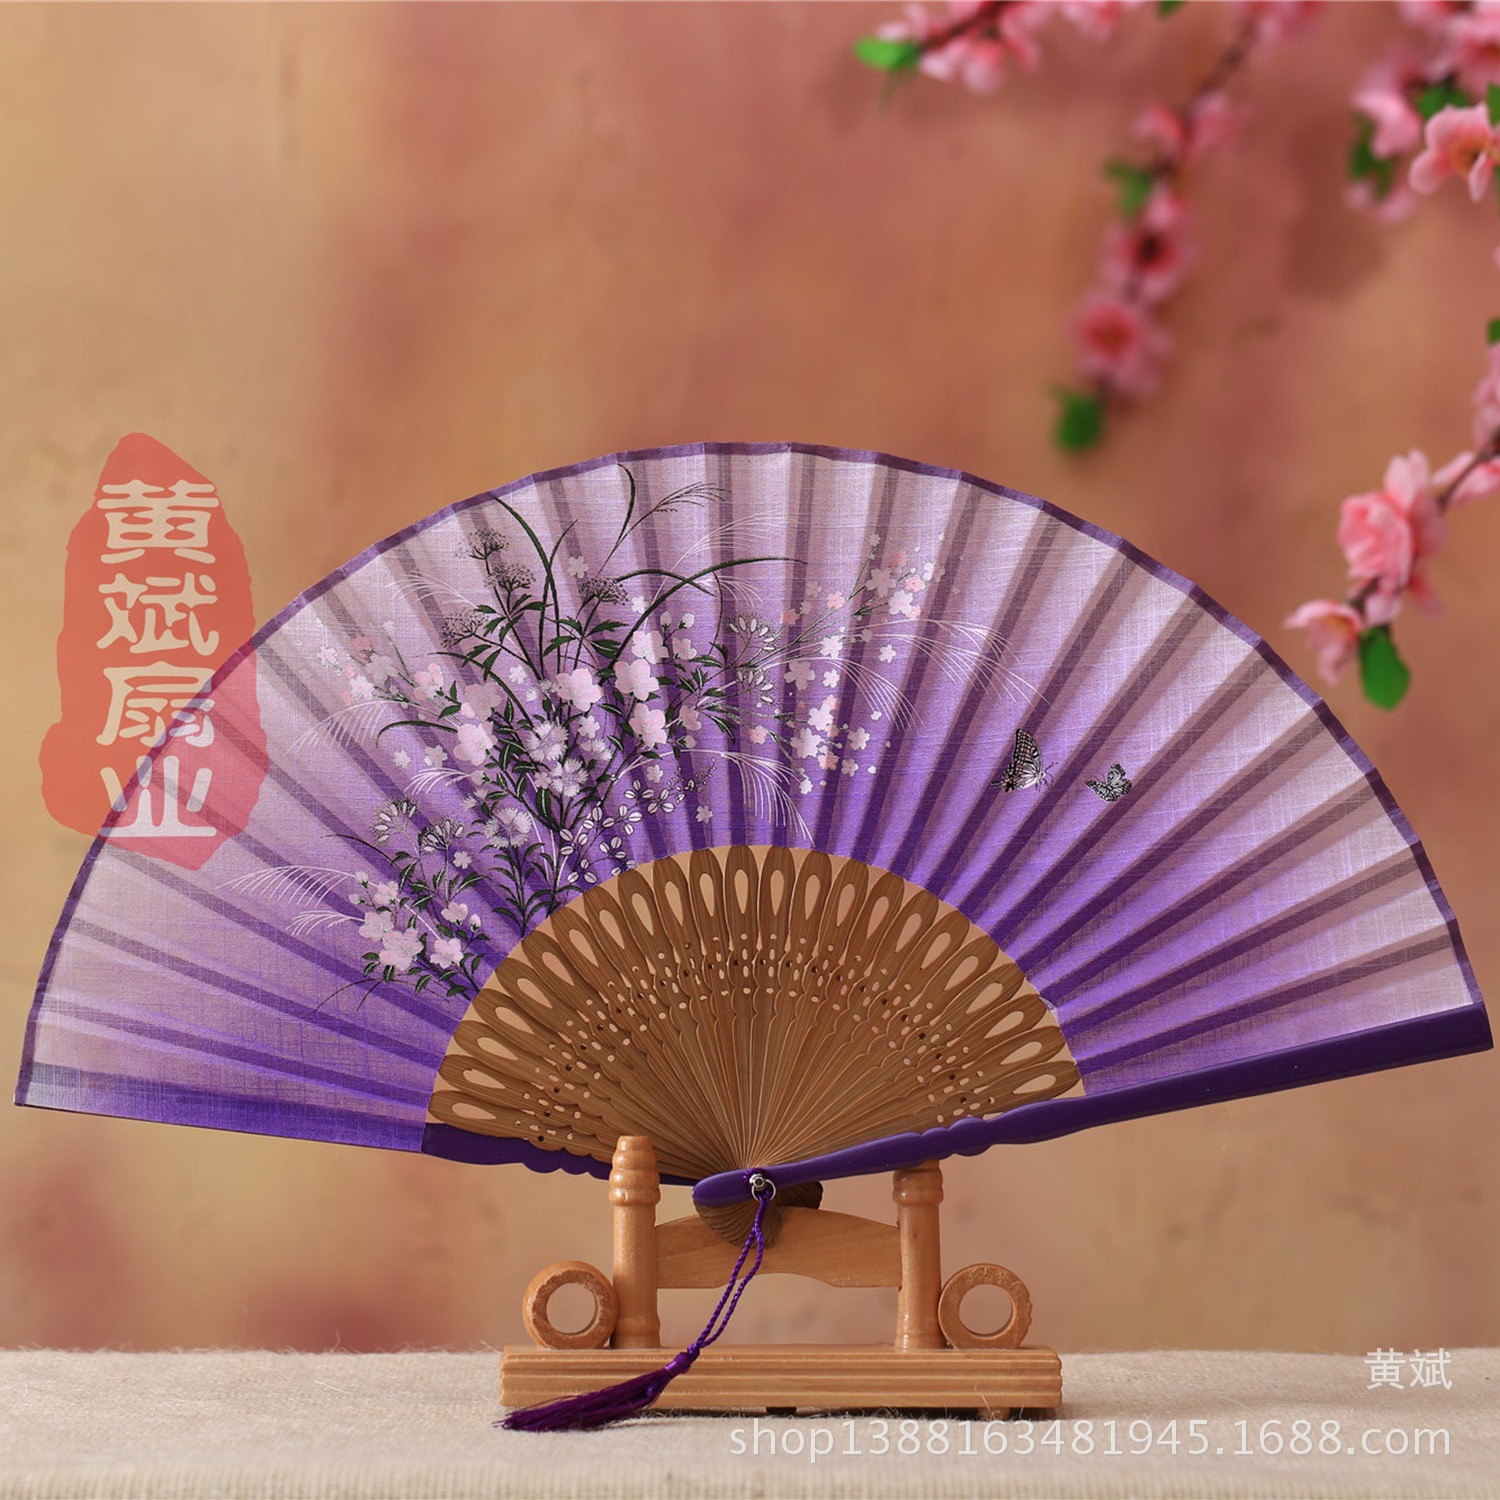 中国风礼品扇/新品女式亚麻/手工雕刻印花细节图